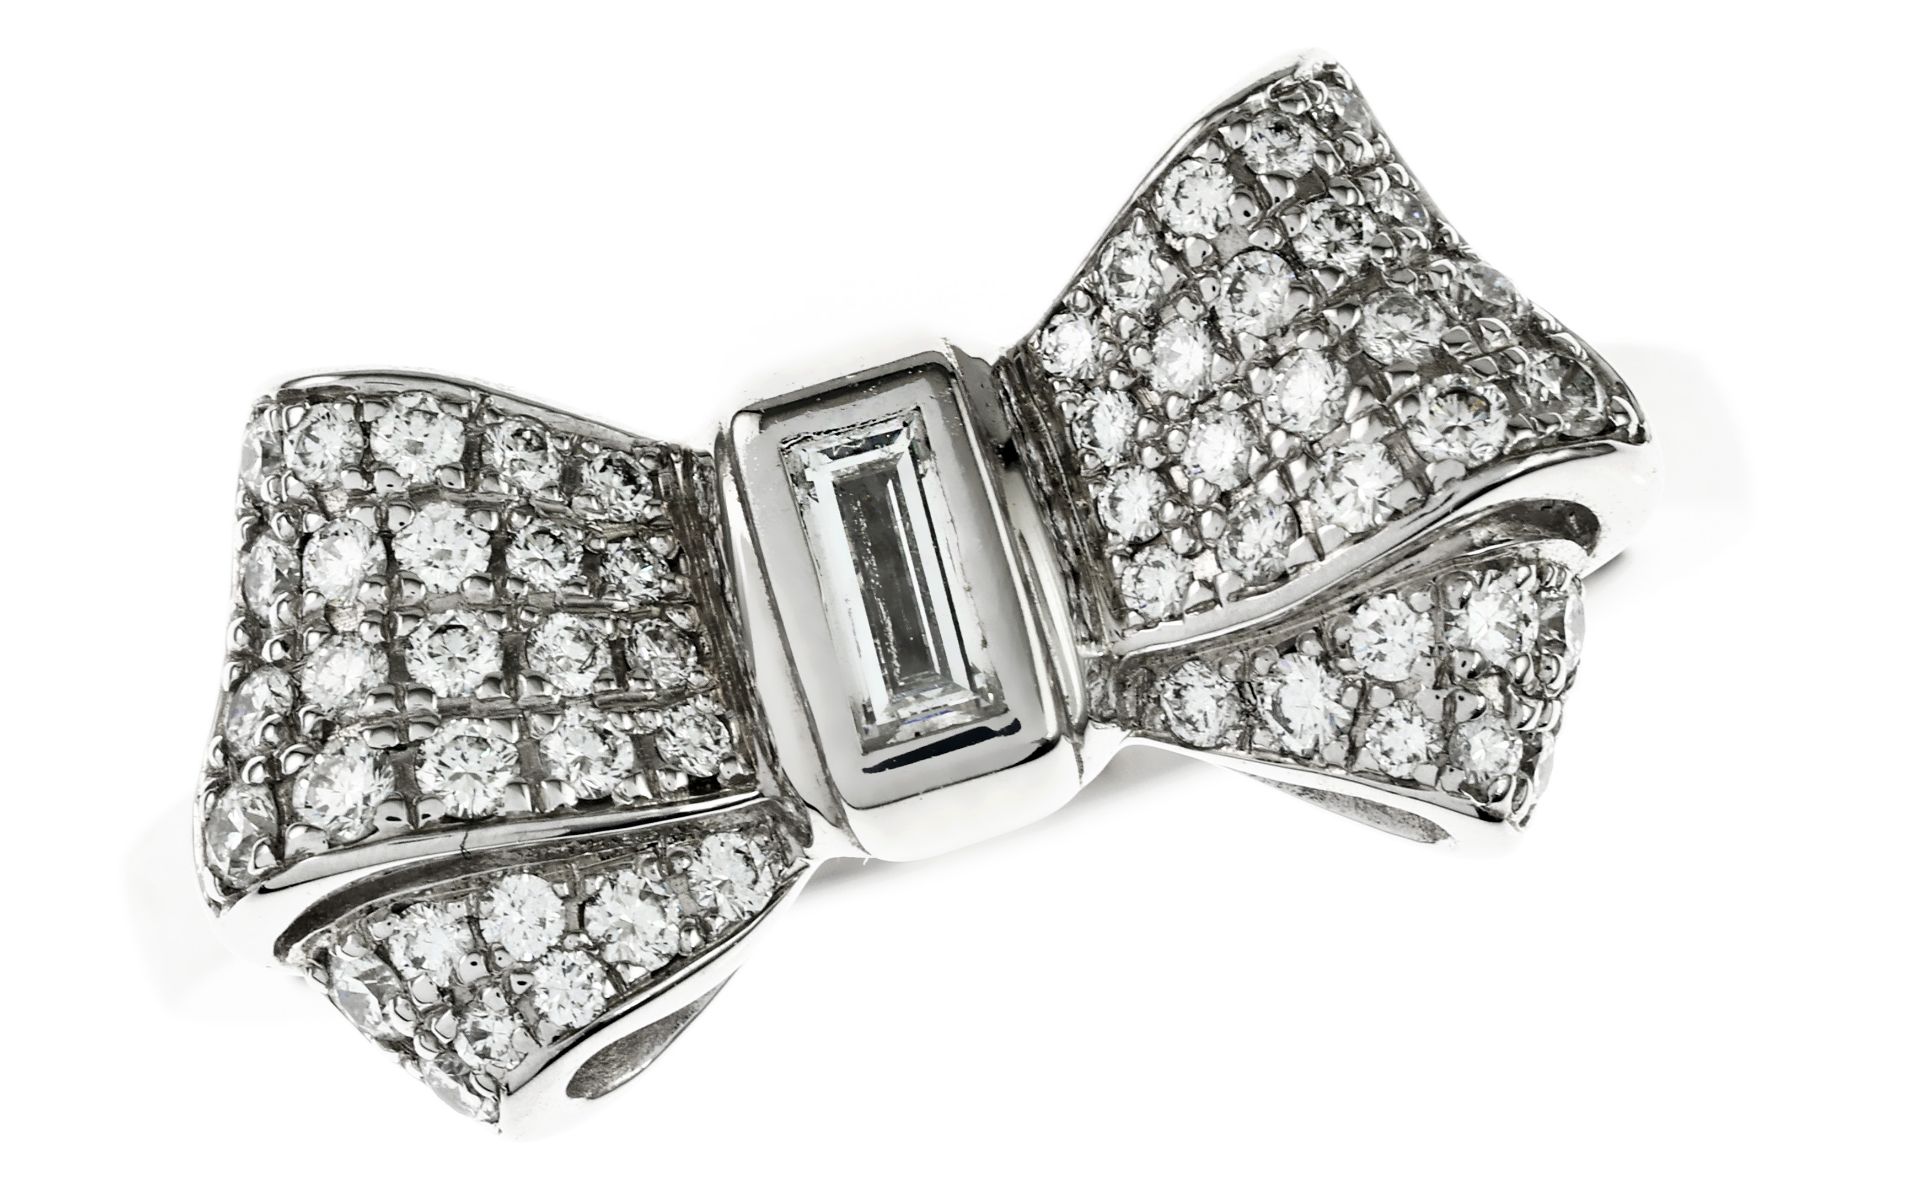 Chopard Ring Ref. 825020-1210 5.92g 750/- Weissgold mit Diamanten. mit Zertifikat. Ringgroesse ca. 5 - Bild 2 aus 3